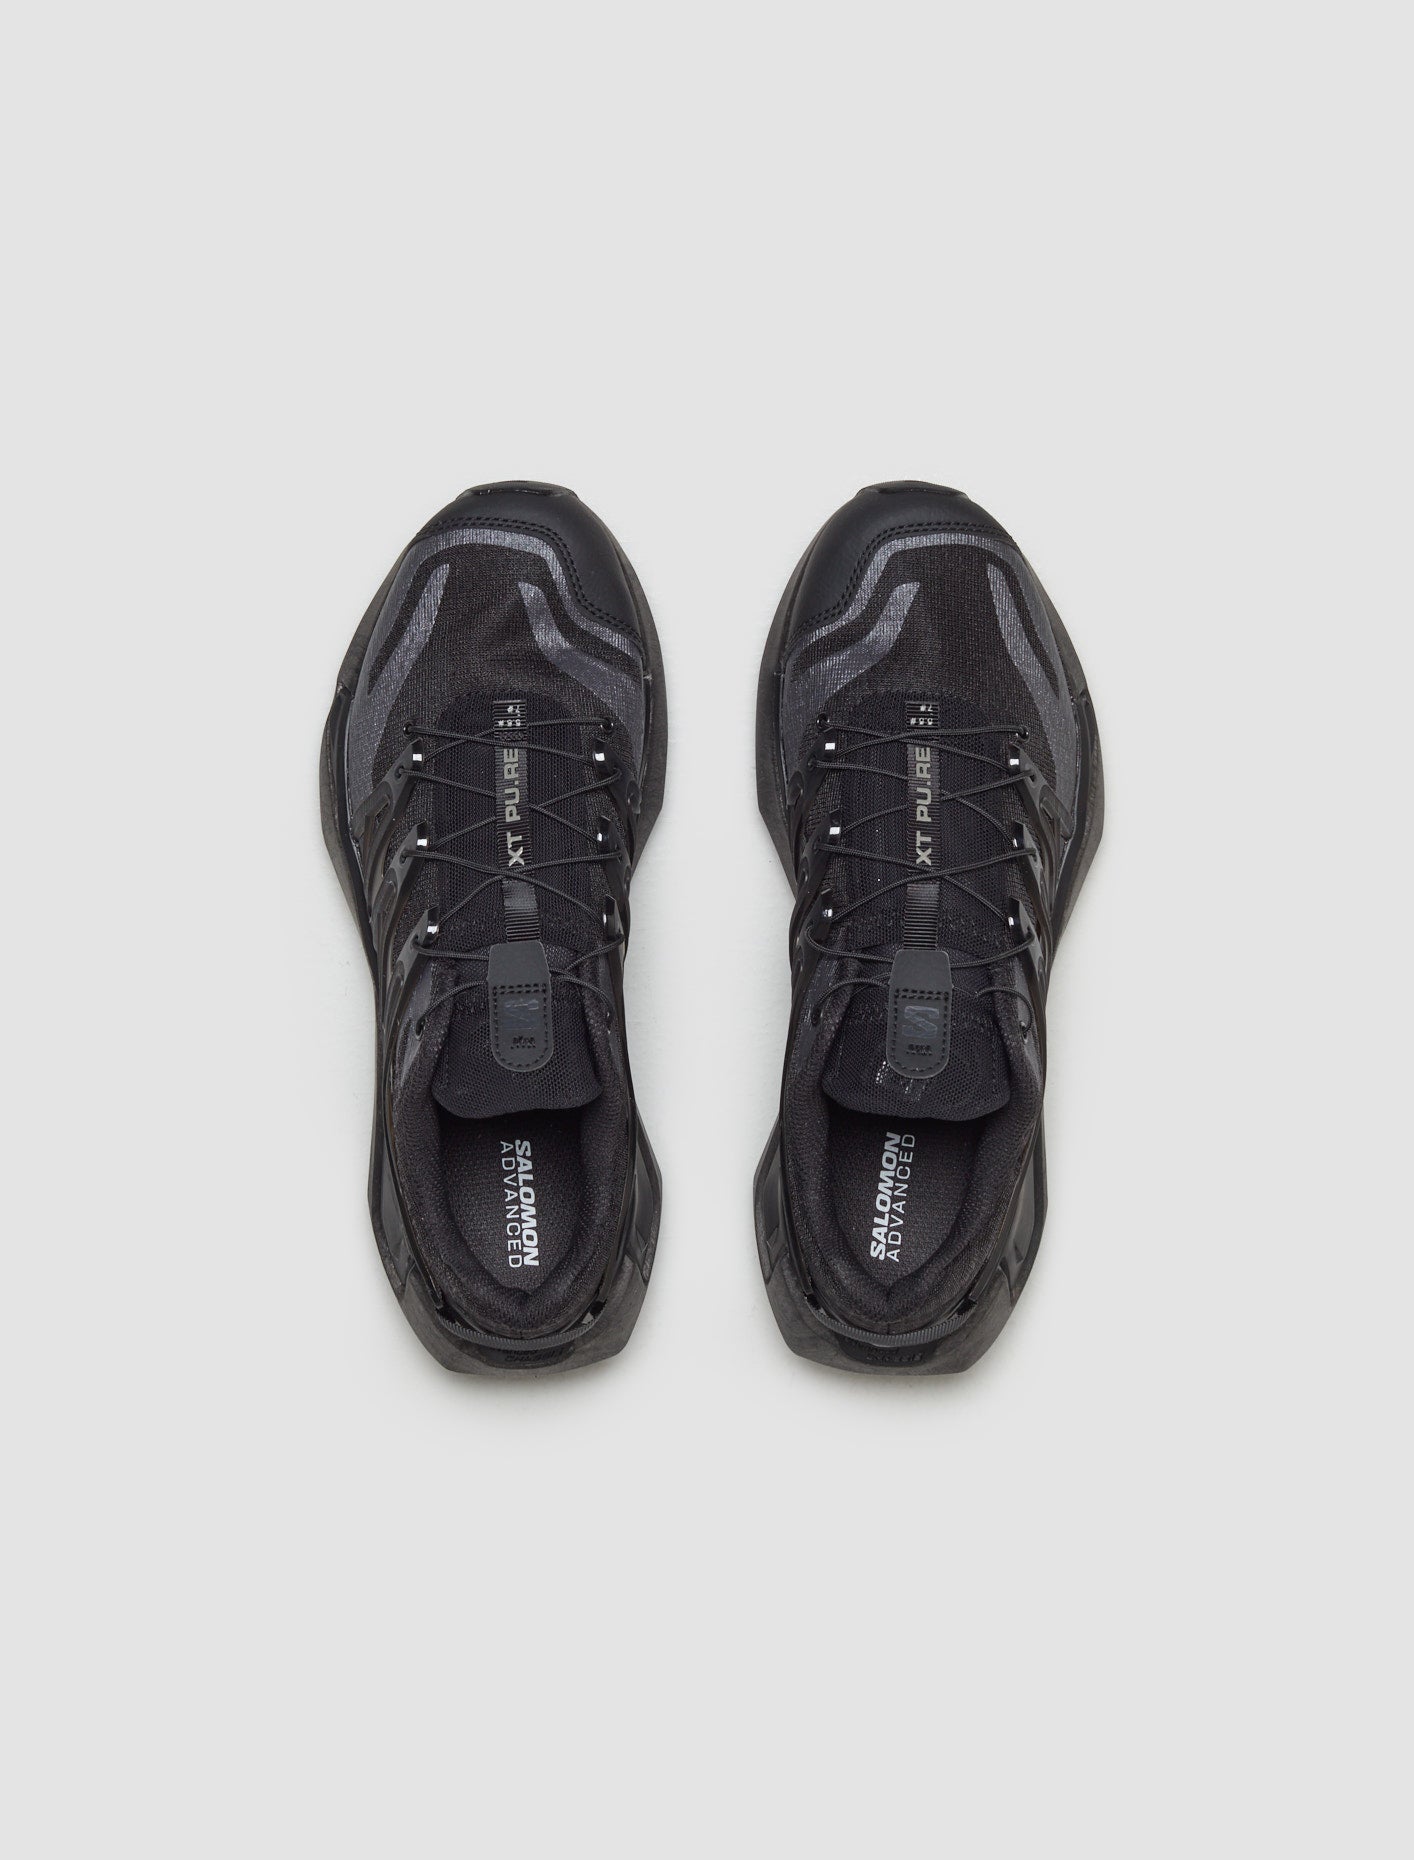 XT PU.RE Advanced Sneaker in Black